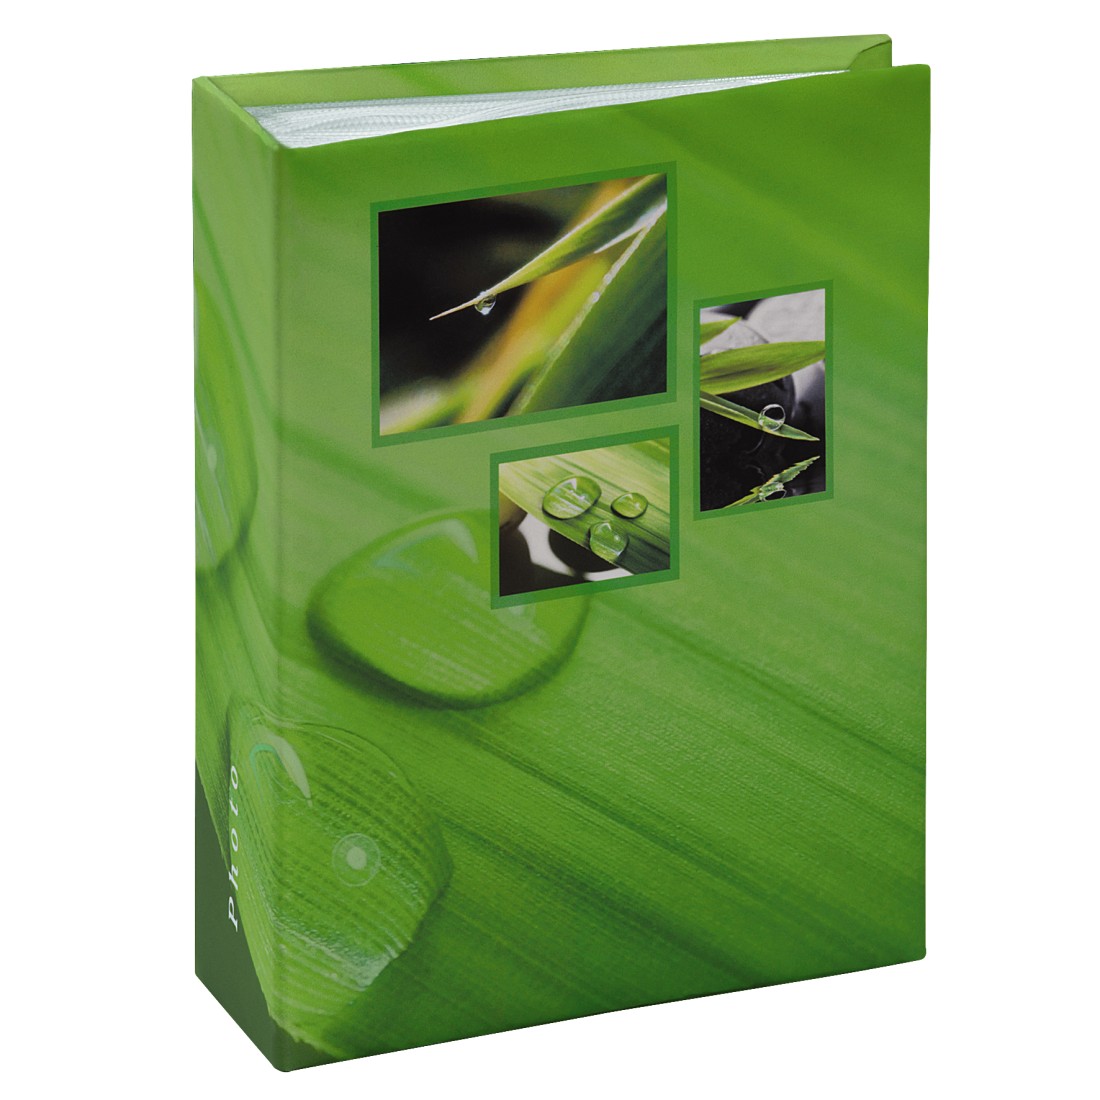 Álbum Singo Minimax para 100 fotos con un tamaño de 10x15 cm, verde